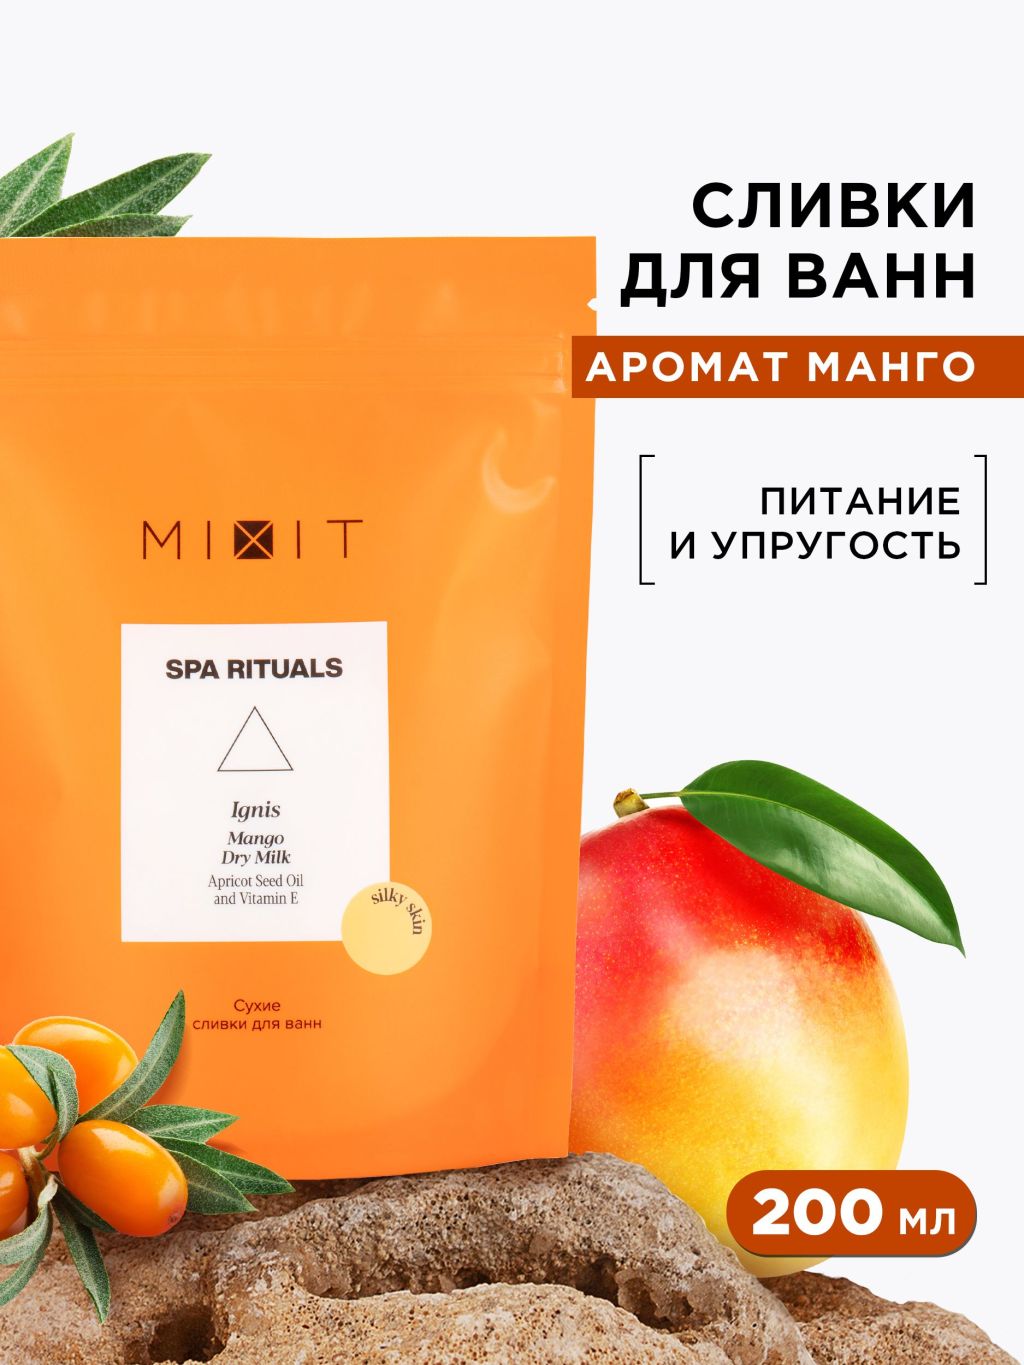 Сливки для ванн Mixit Spa Rituals Ignis Mango сухие, 200 мл